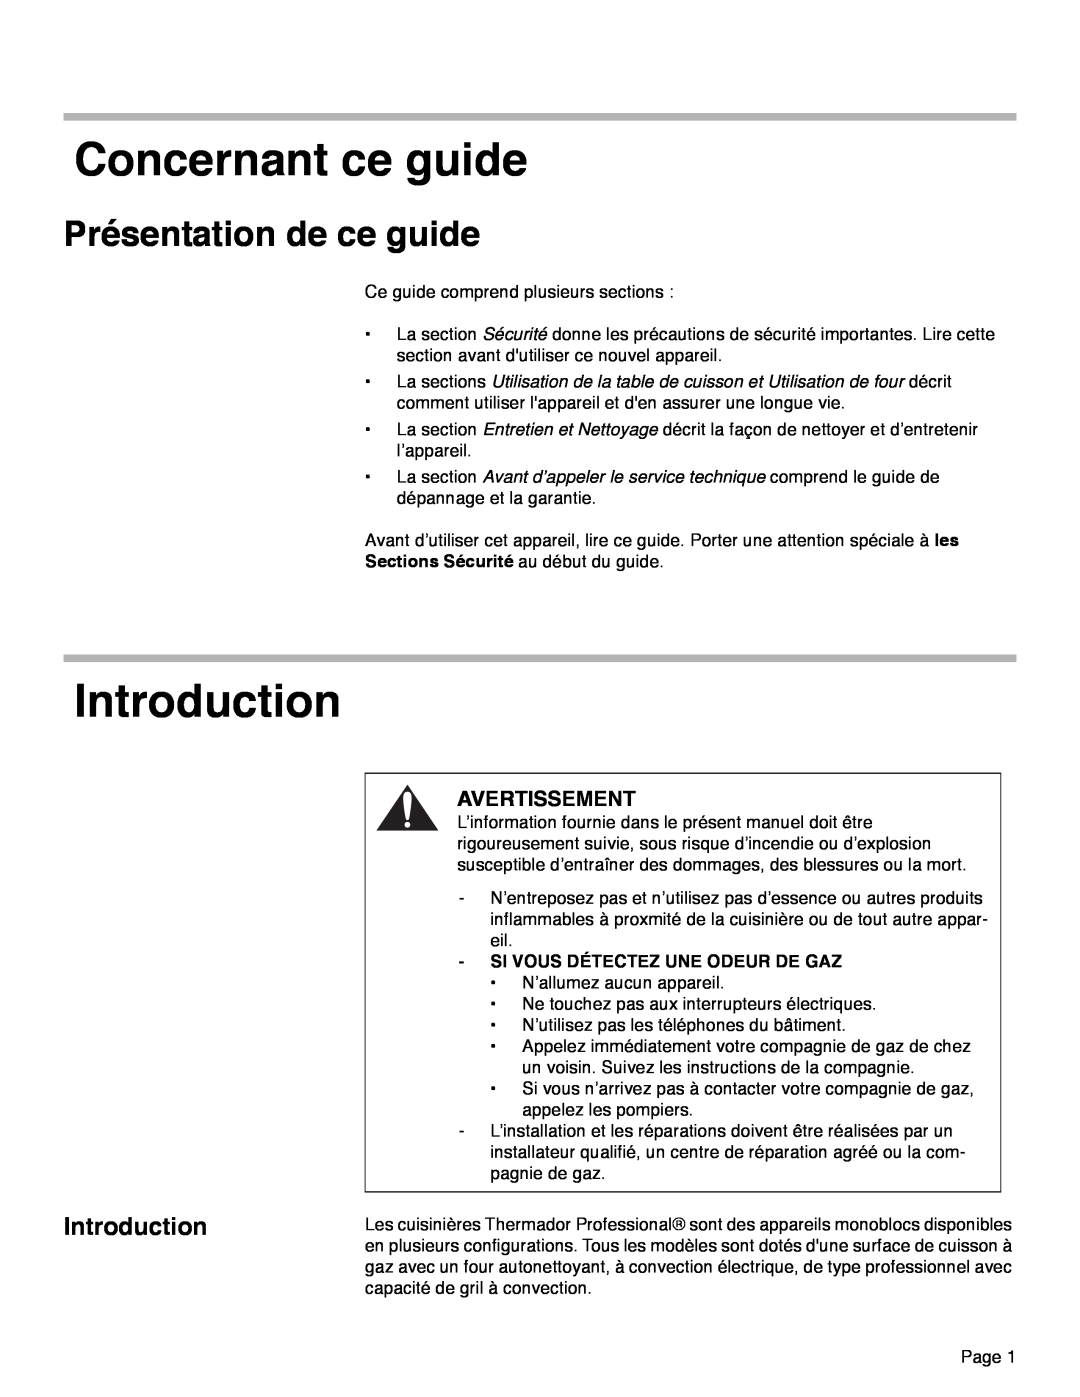 Thermador PRD30, PRD48, PRD36 manual Concernant ce guide, Introduction, Présentation de ce guide, Avertissement 